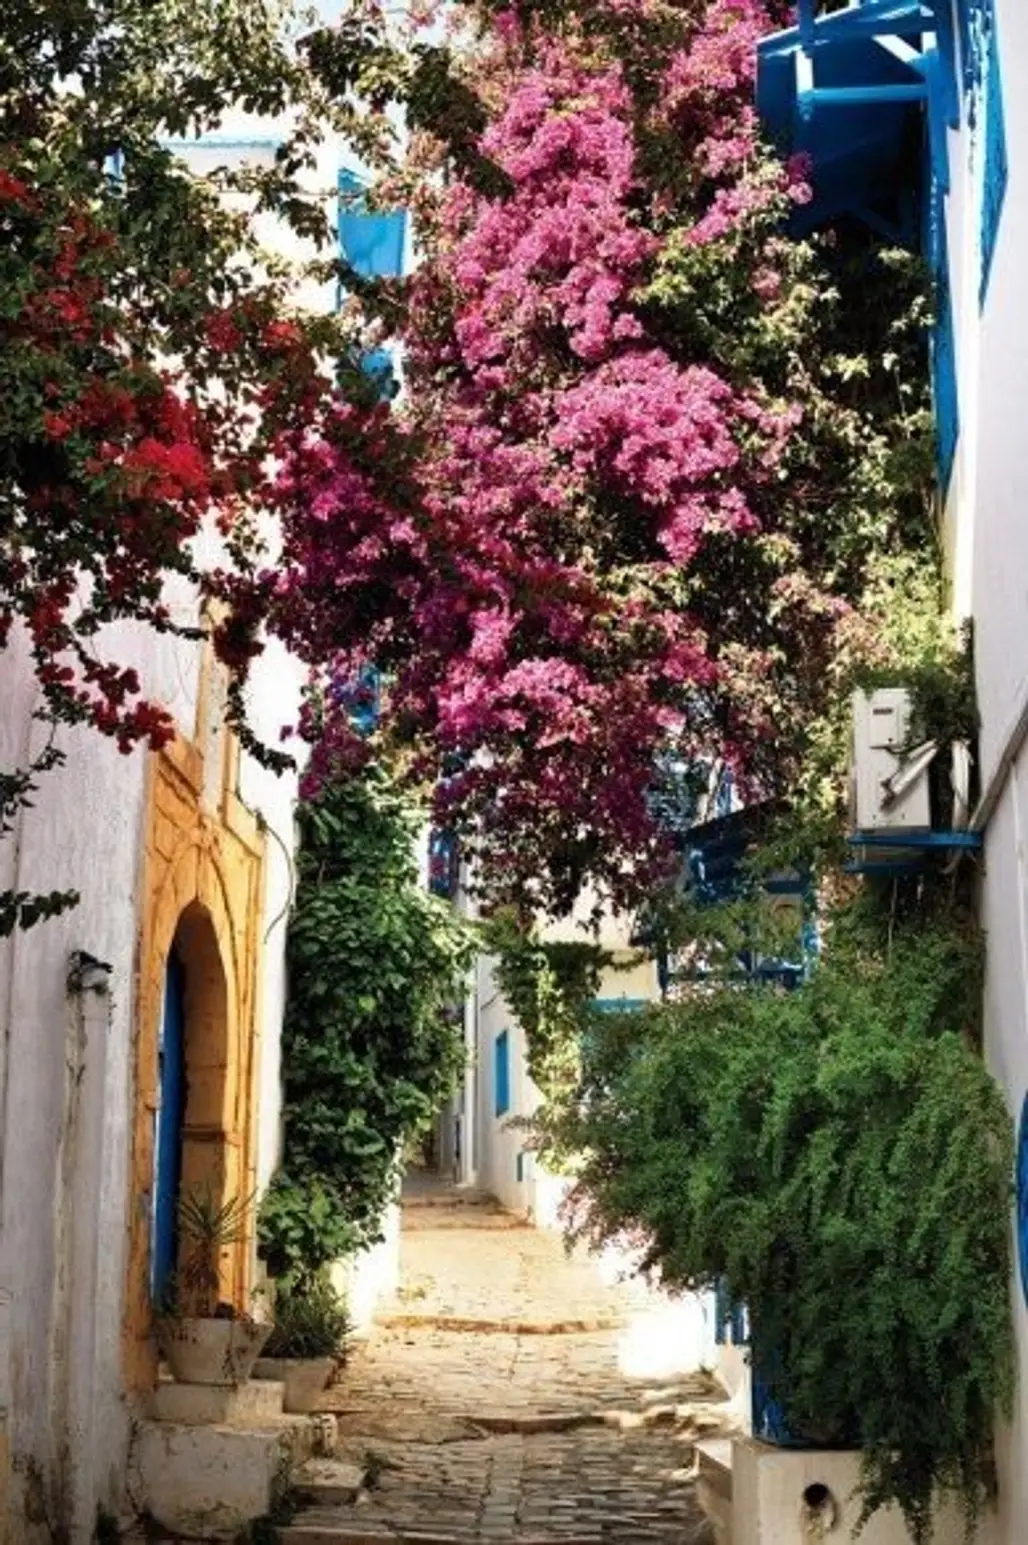 Sidi Bou Saïd, Tunisia